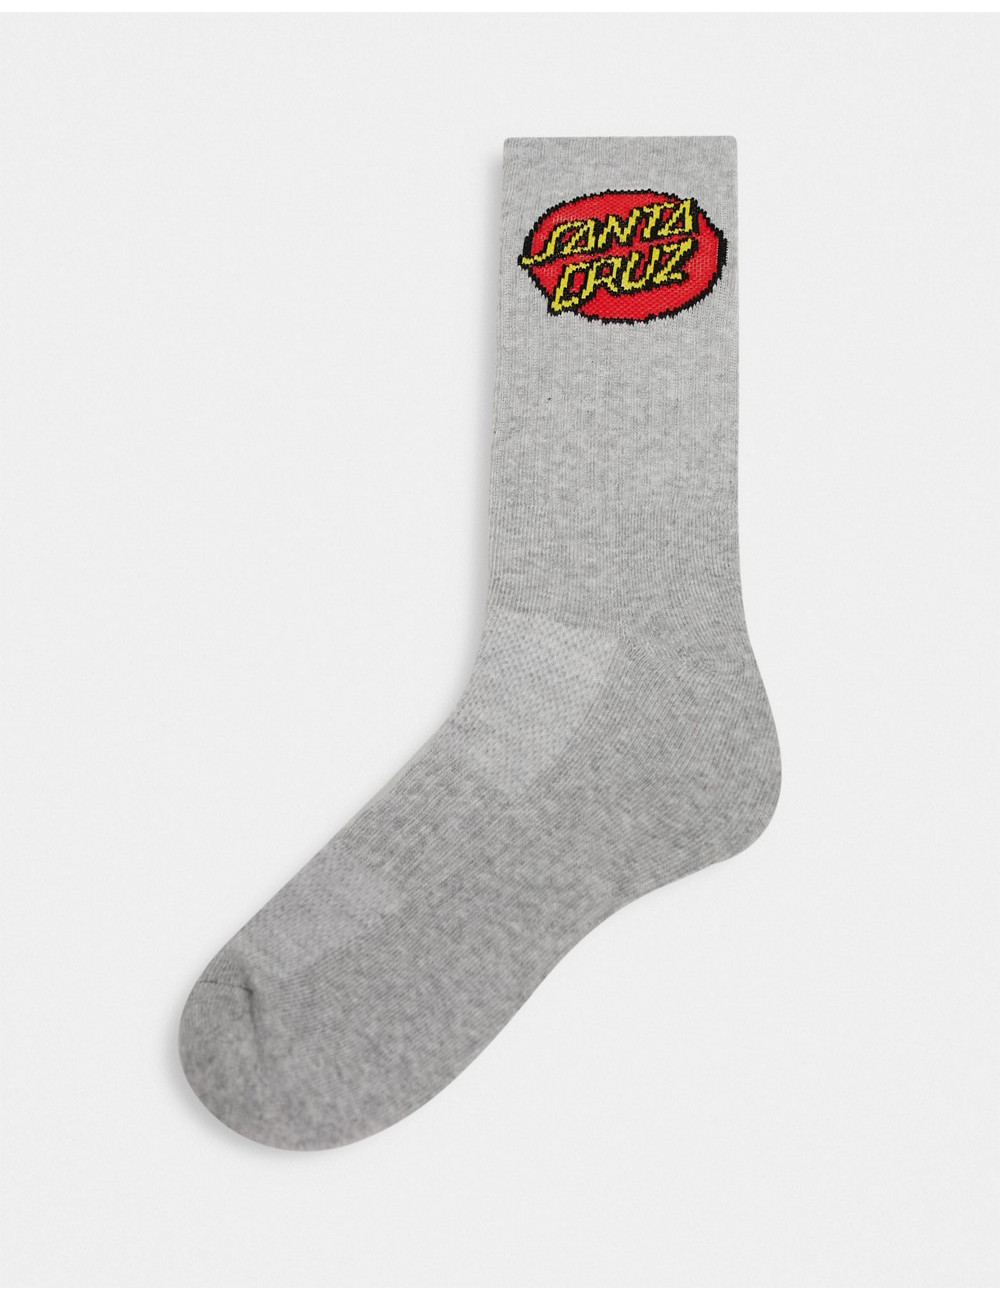 Santa Cruz dot socks in grey